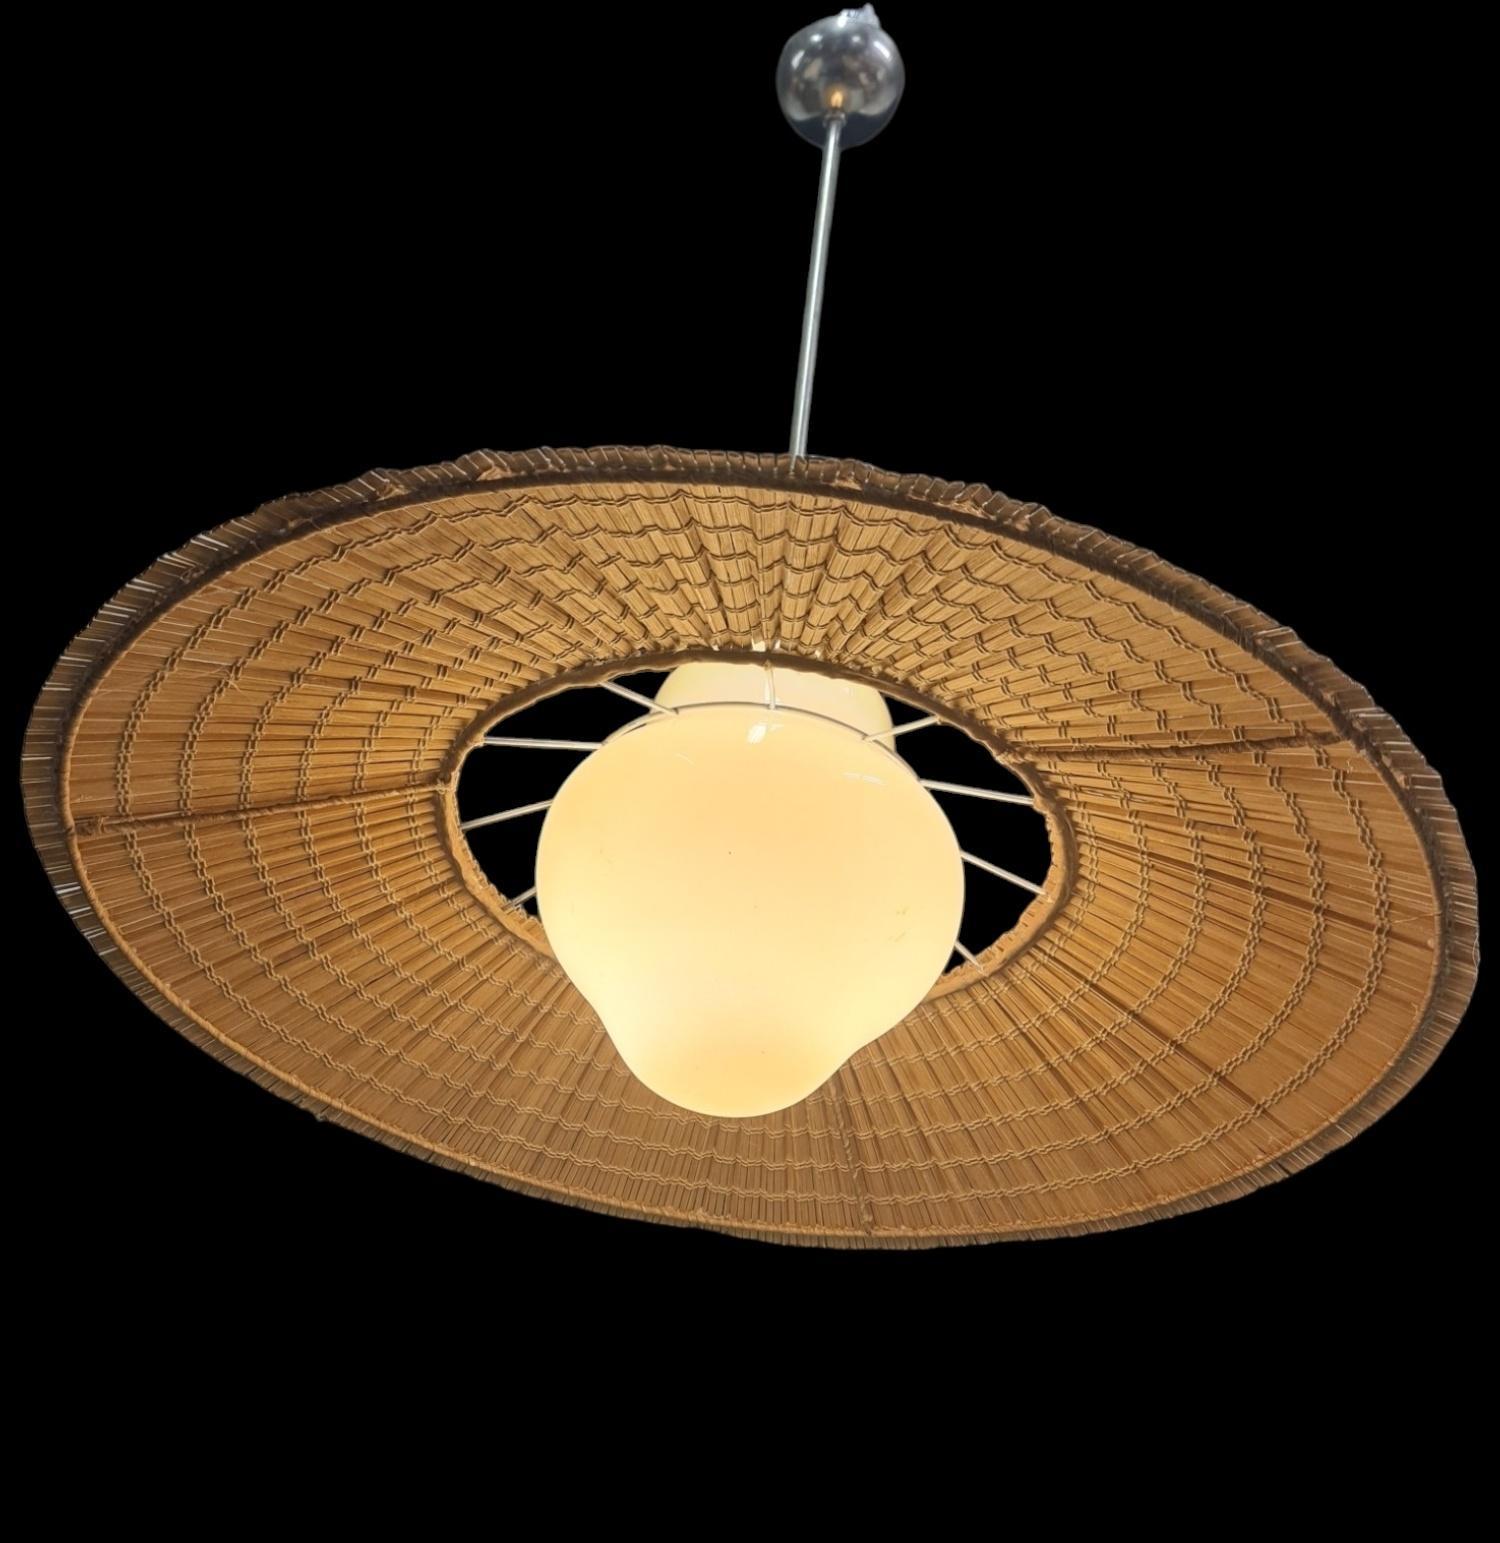 Lisa Johansson-Papé Ceiling Lamp model 1088, Orno 6